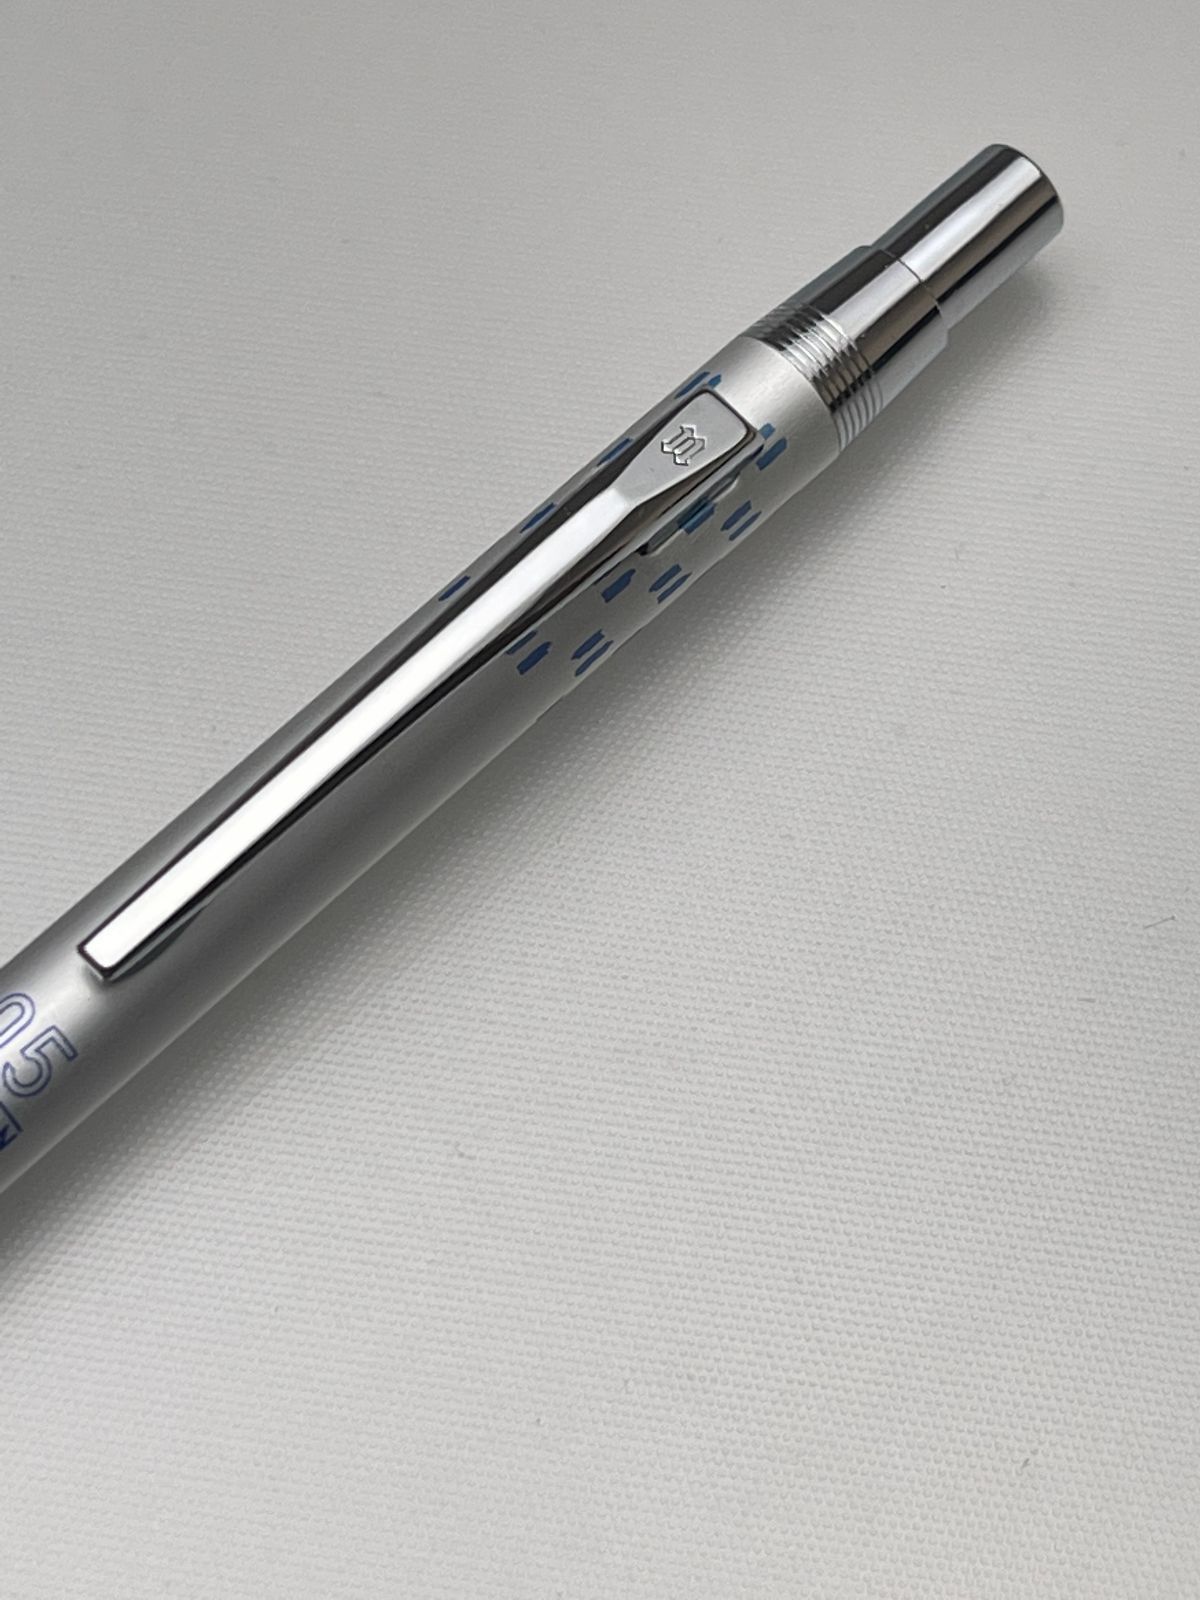 ニューマン 純銀製 シャーペン シルバー 回転繰り出し式 0.5mm 廃番